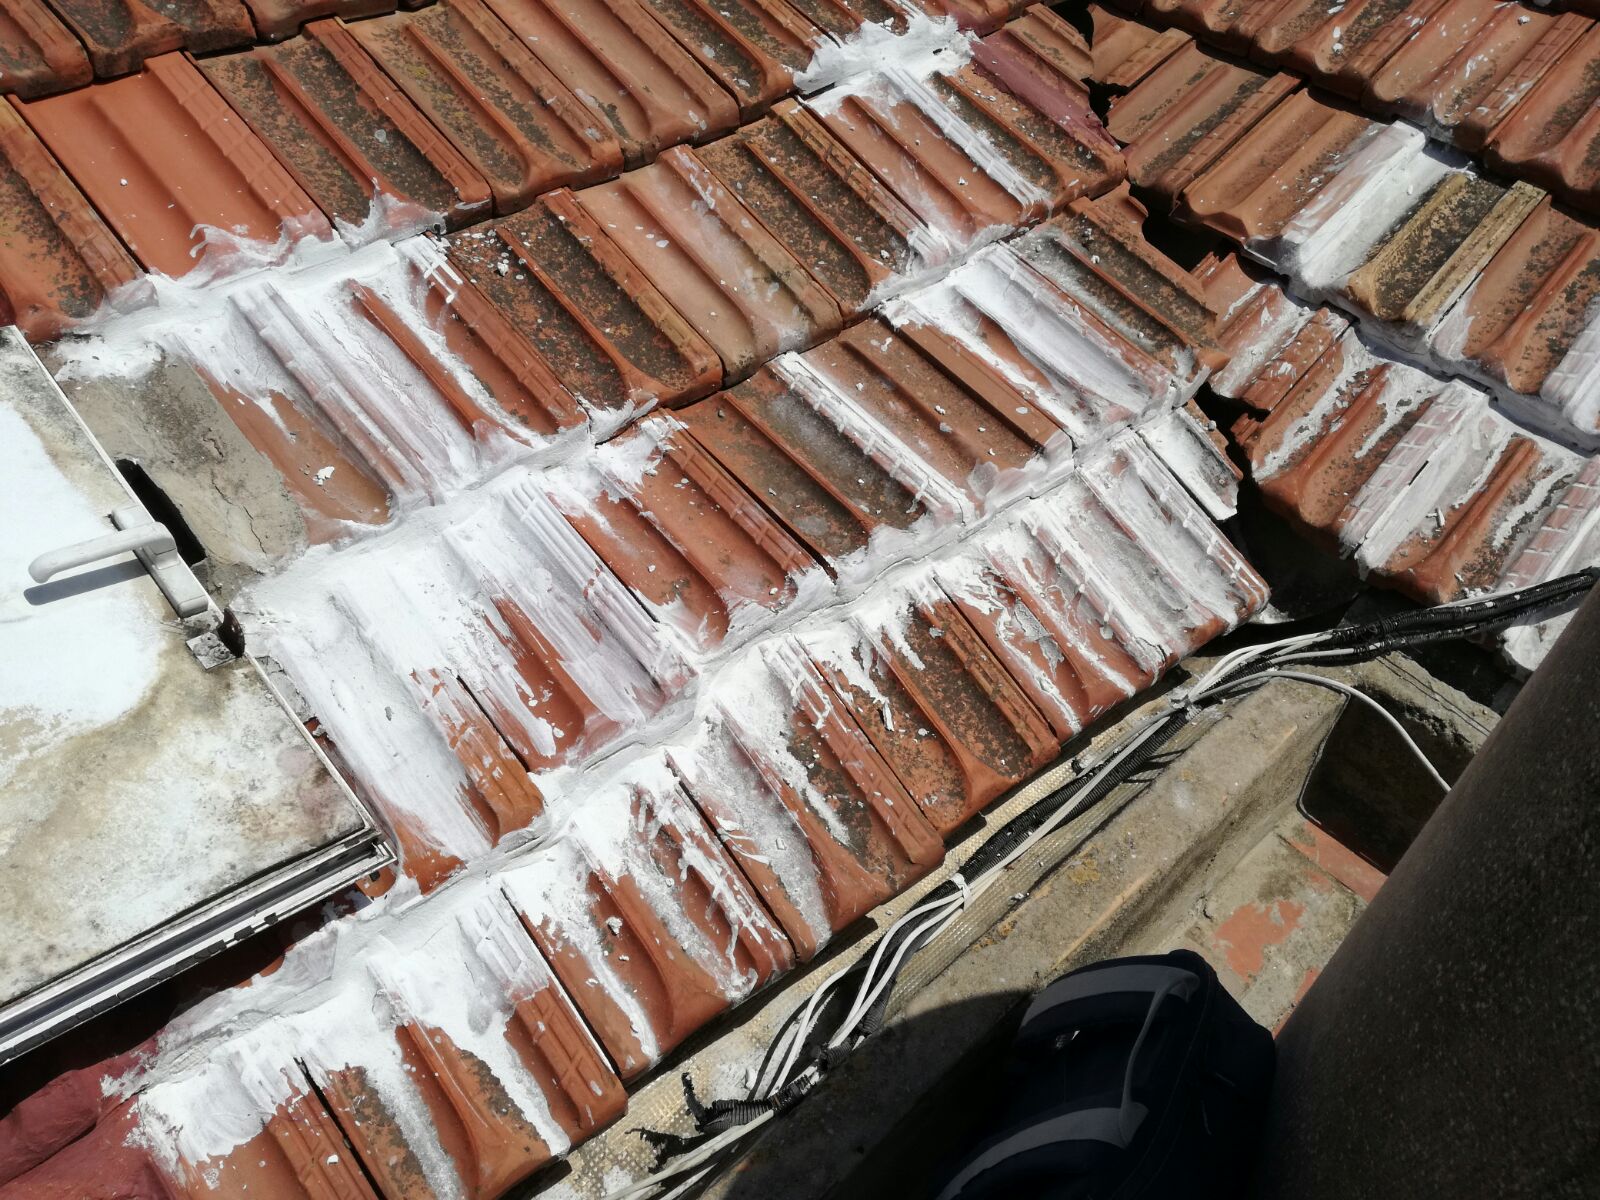 Impermeabilización de tejado